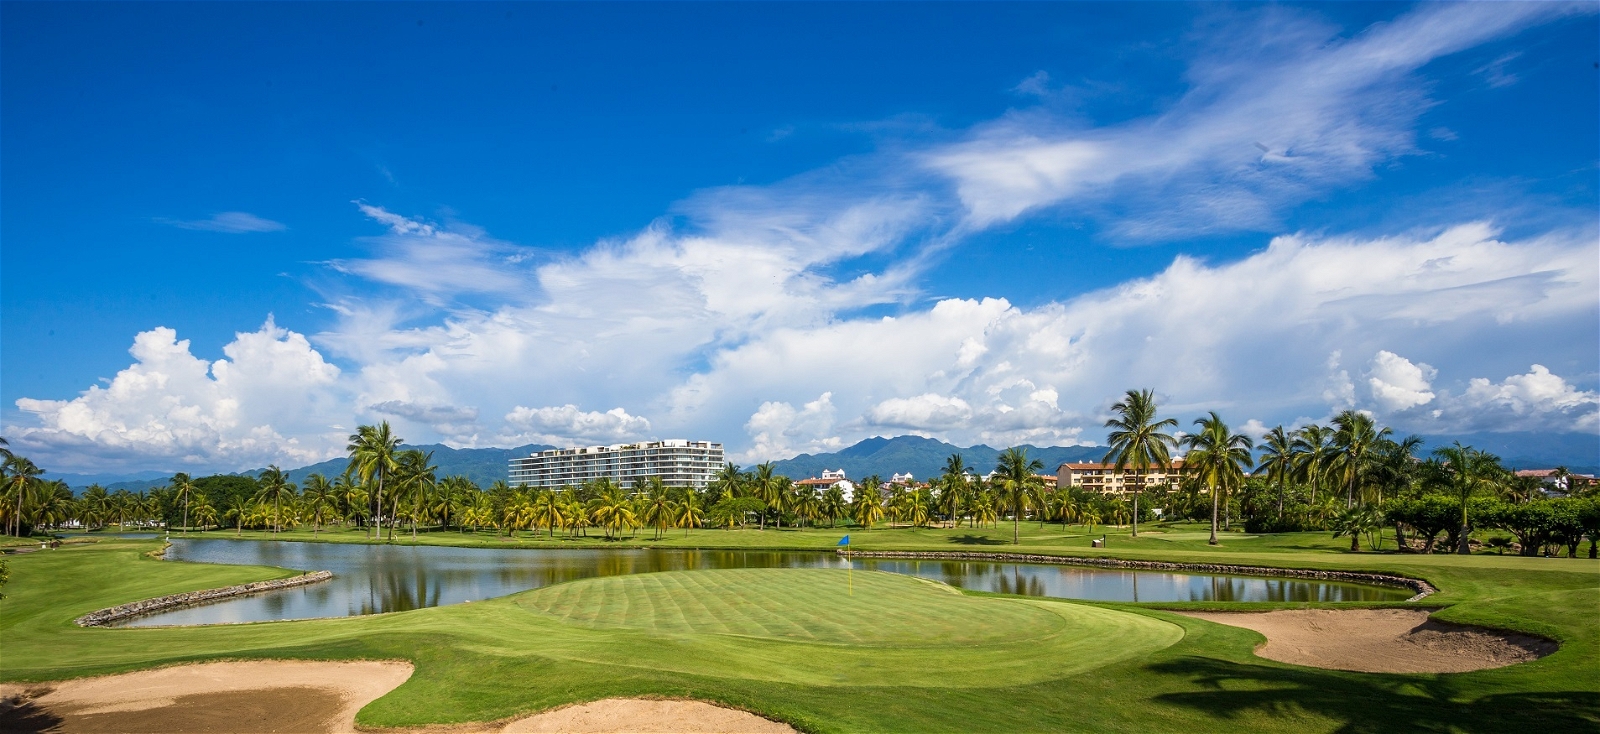 Golf Vacation Package - Marriott Puerto Vallarta Resort & 3 Great Tracks!